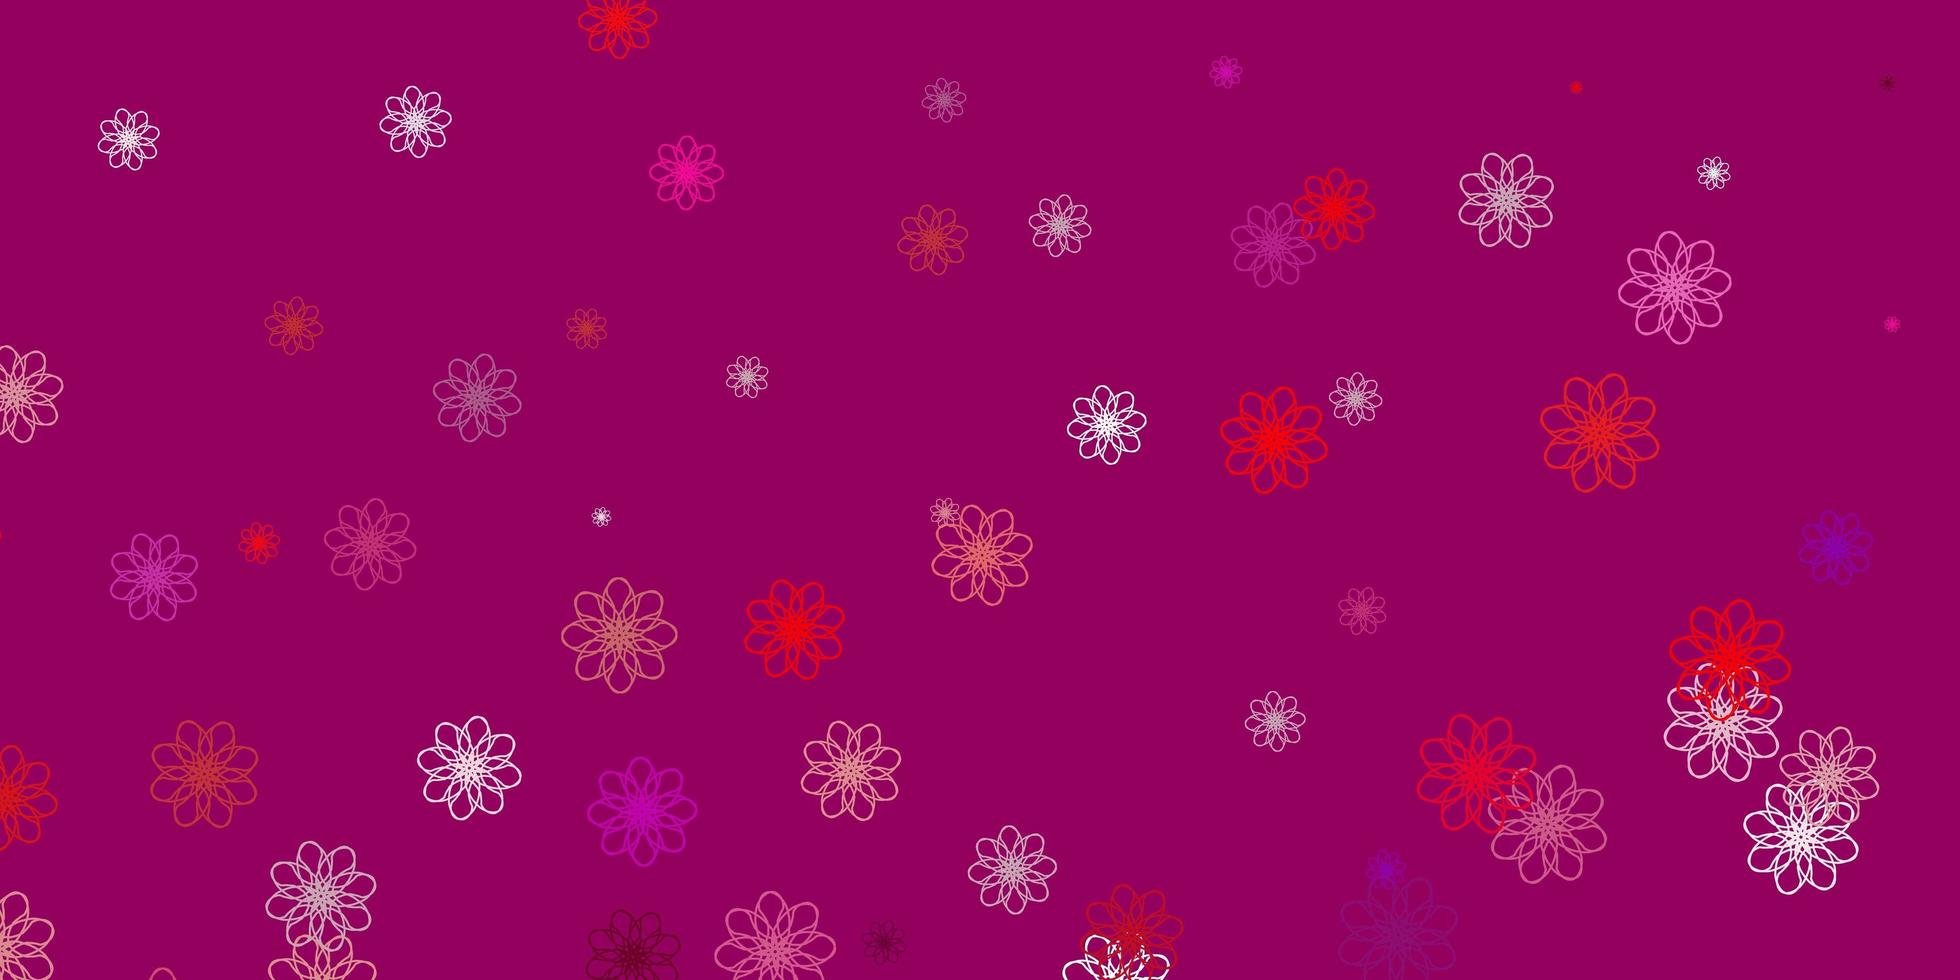 struttura di doodle di vettore rosa chiaro, rosso con fiori.